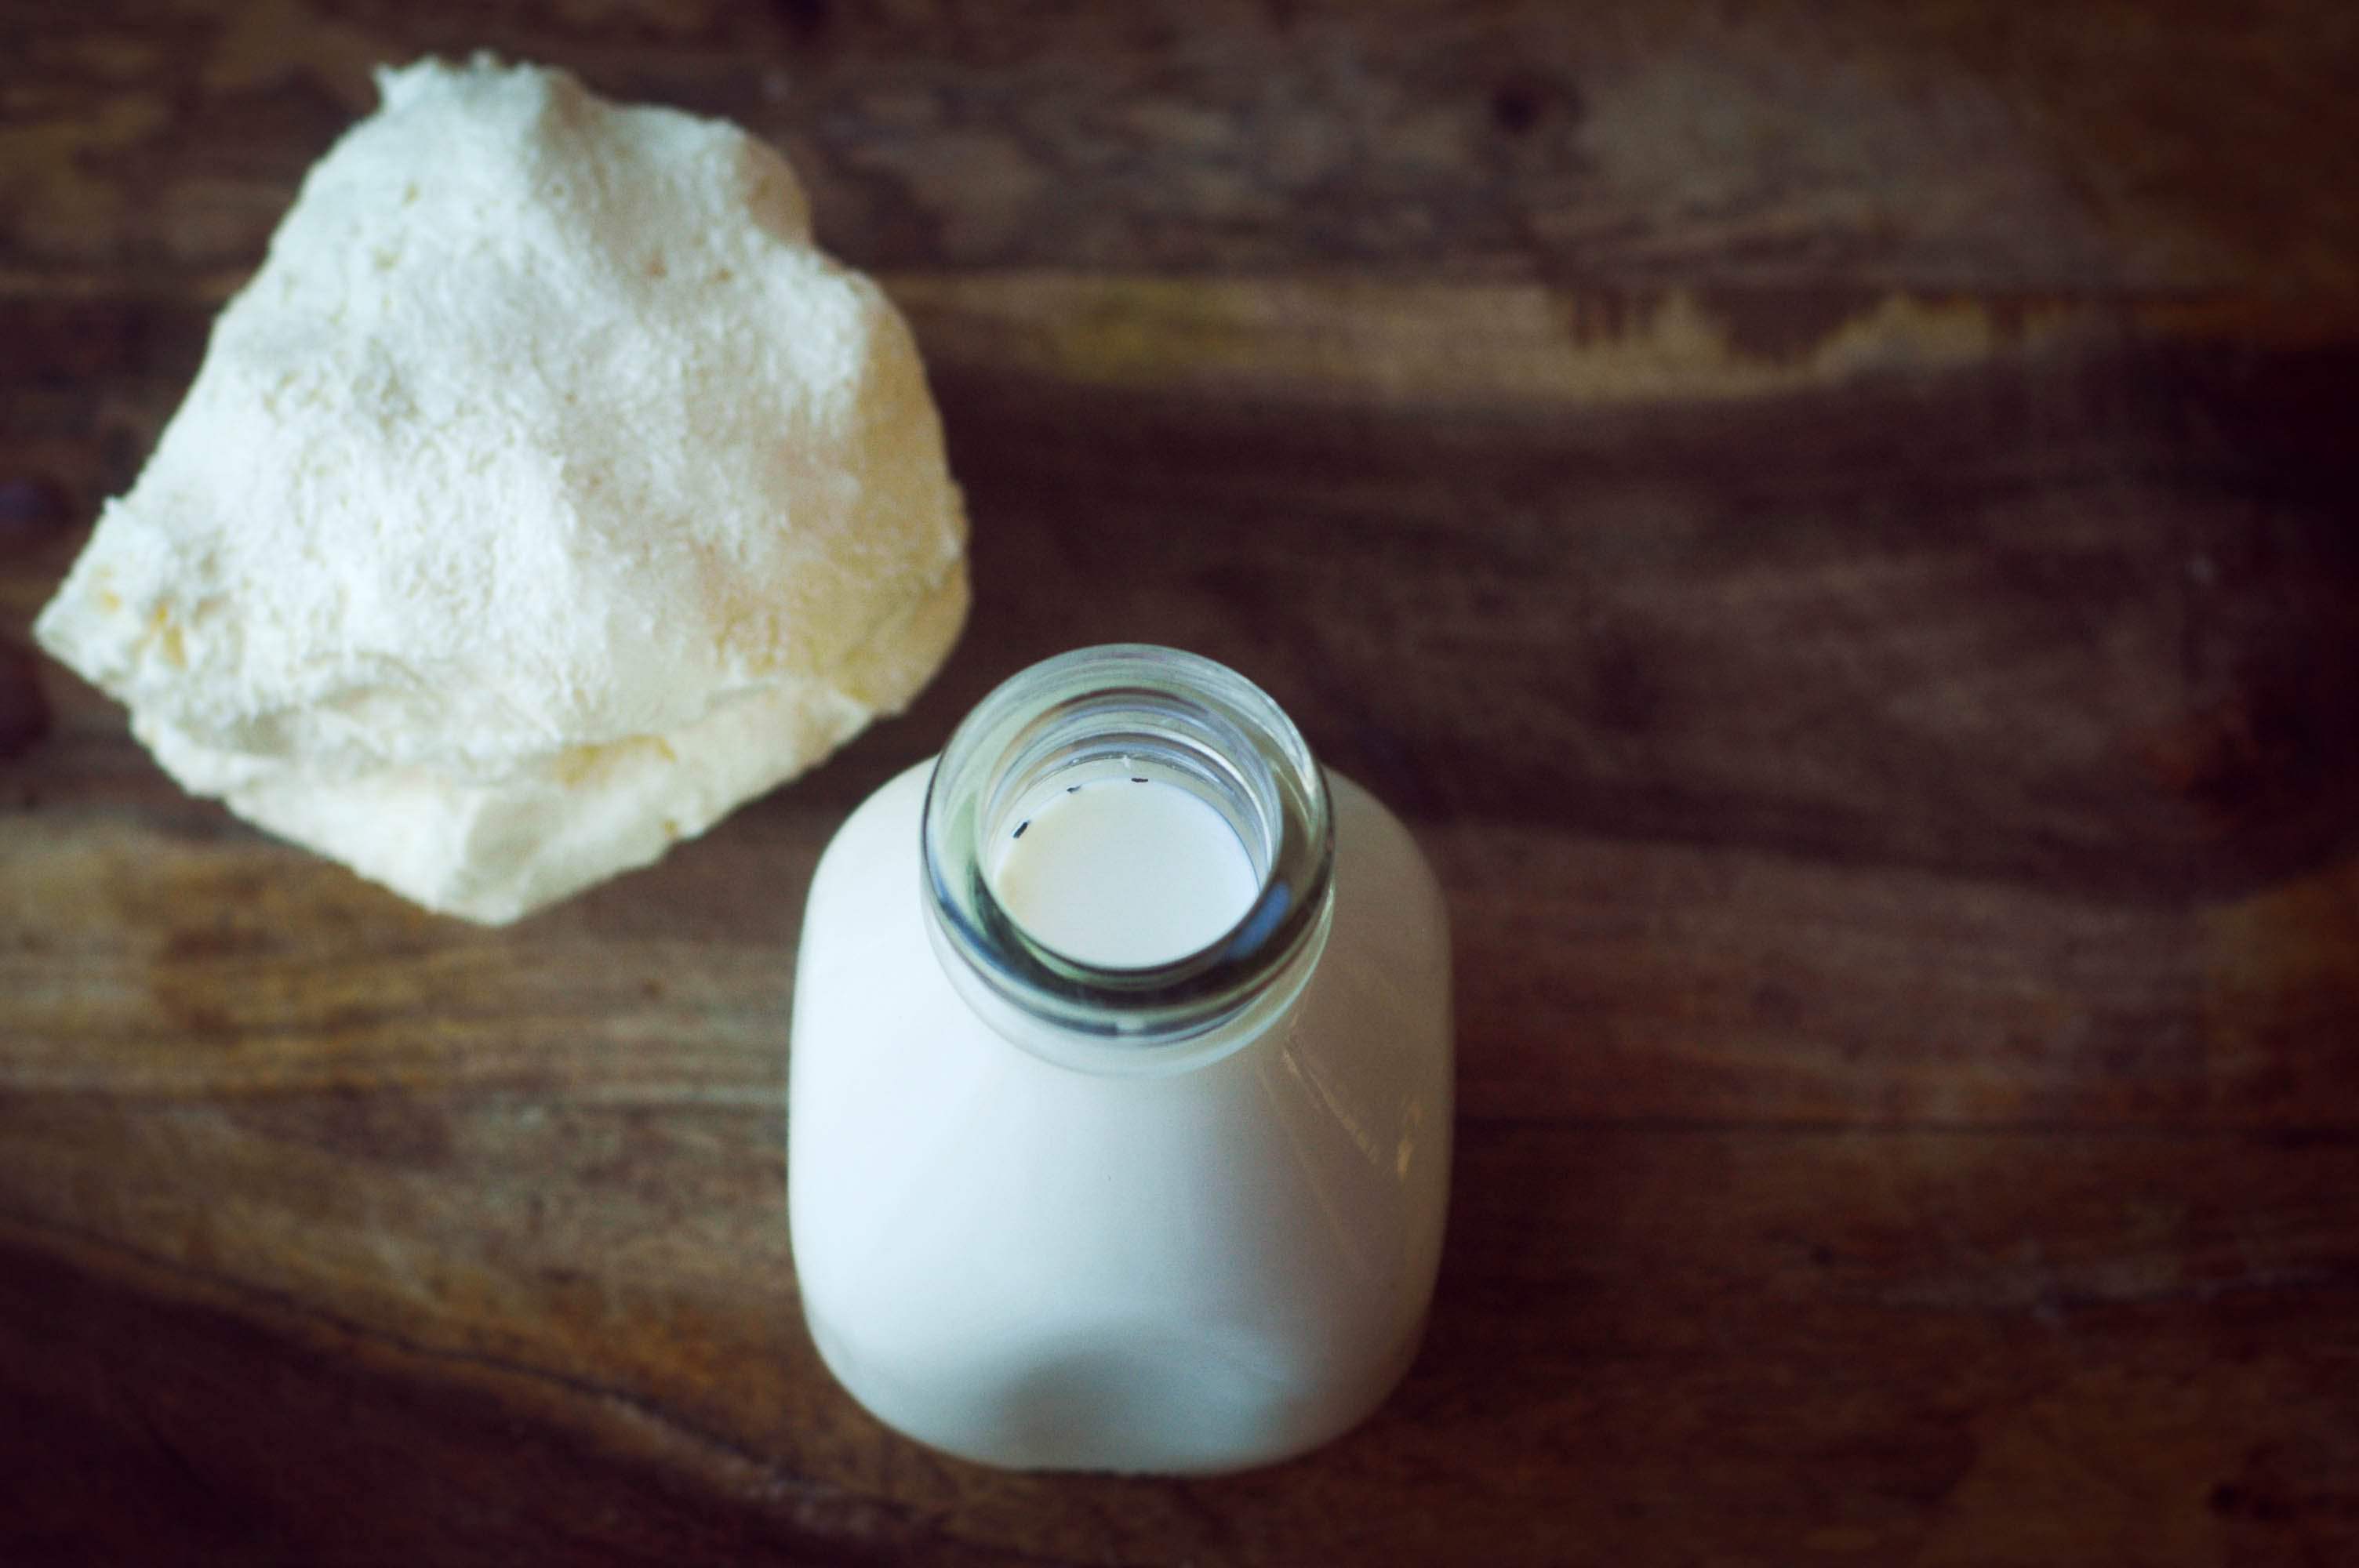 What does buttermilk taste like?